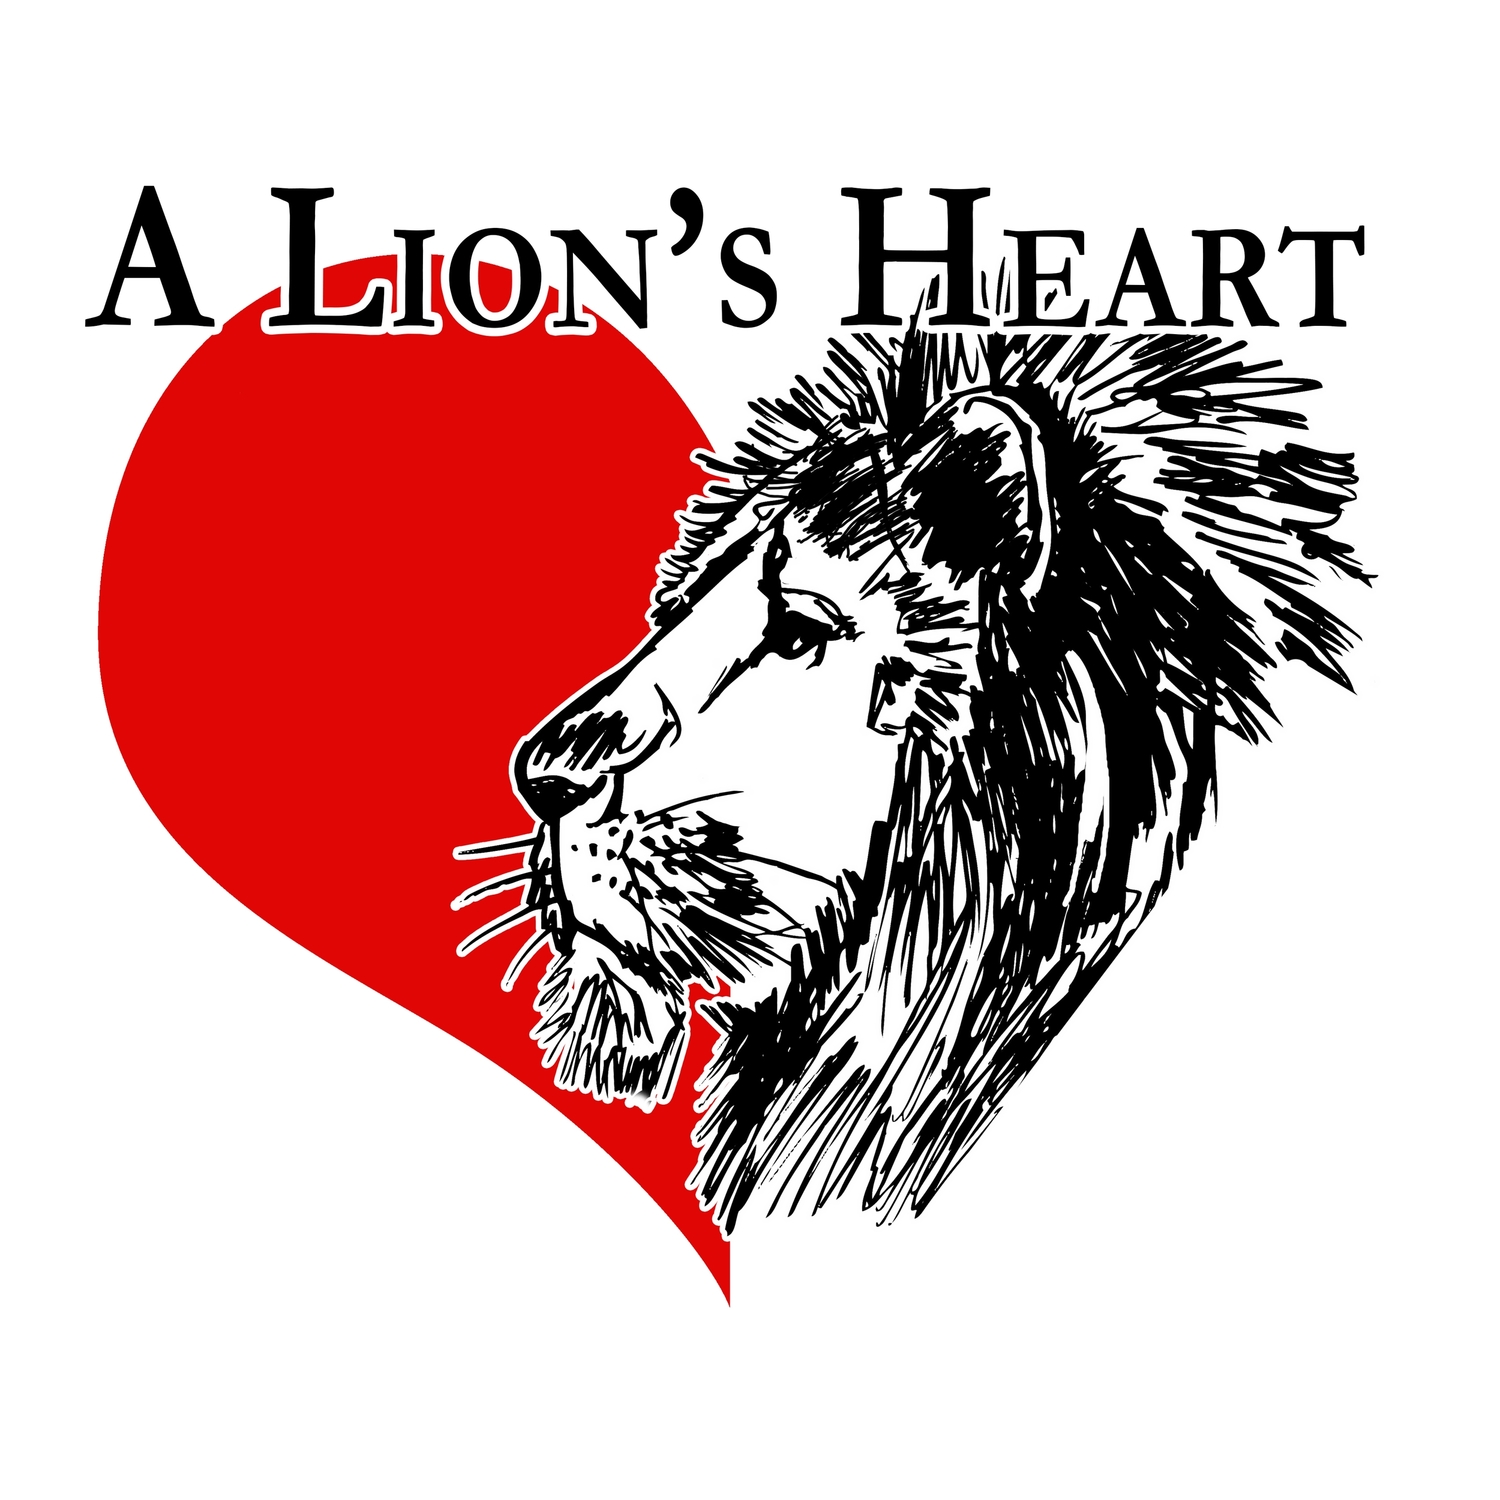 A Lion's Heart